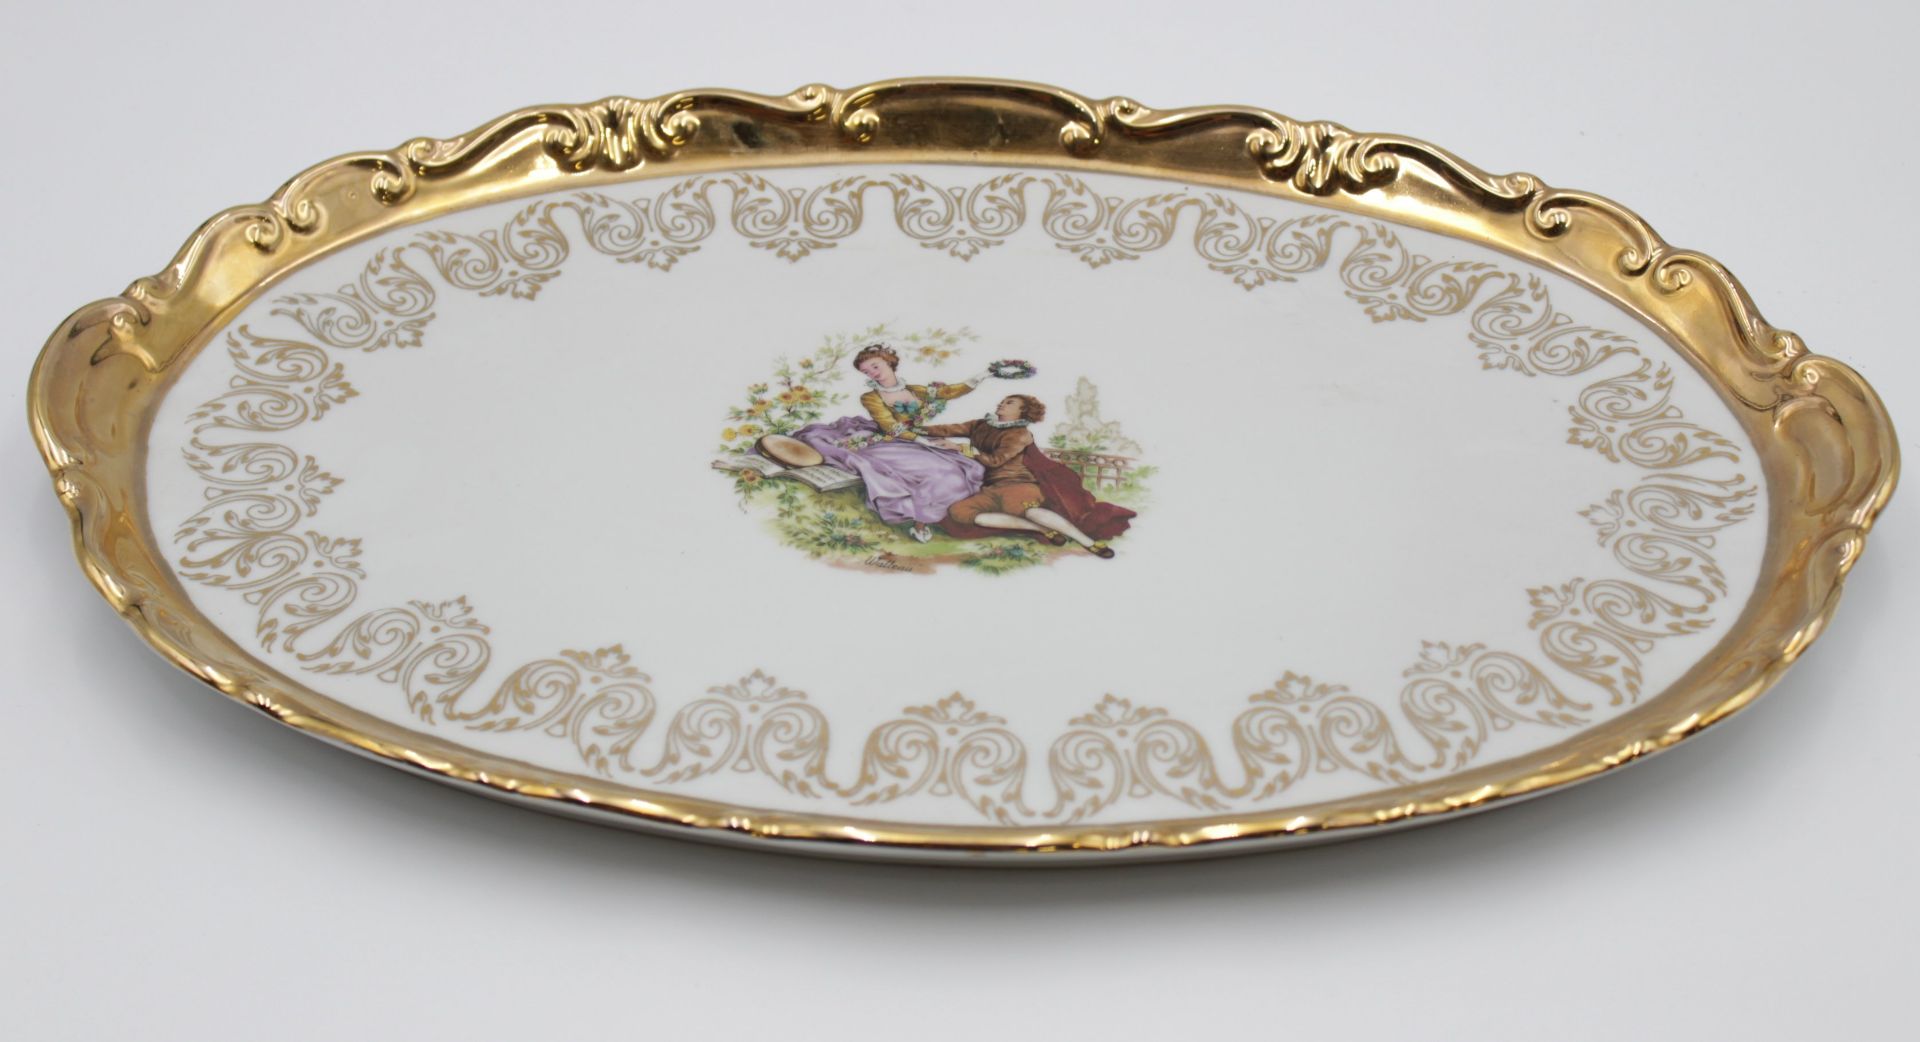 ovale Platte, ungemarkt, Golddekor, mittig Watteau-Szene, 42,5 x 27,5cm. - Bild 3 aus 4